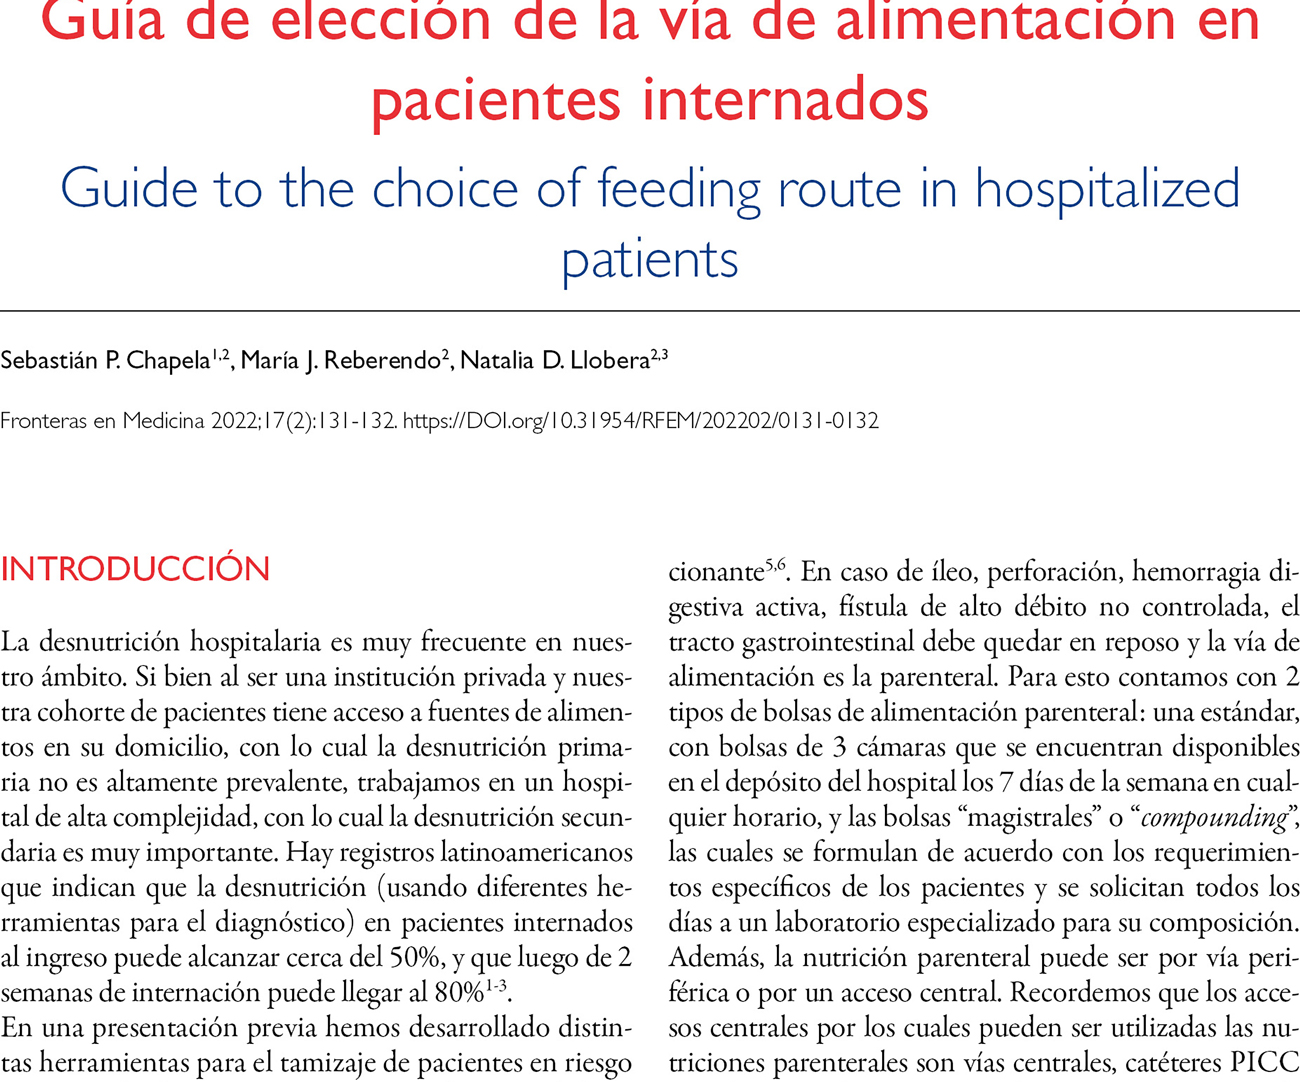 Guía de elección de la vía de alimentación en pacientes internados